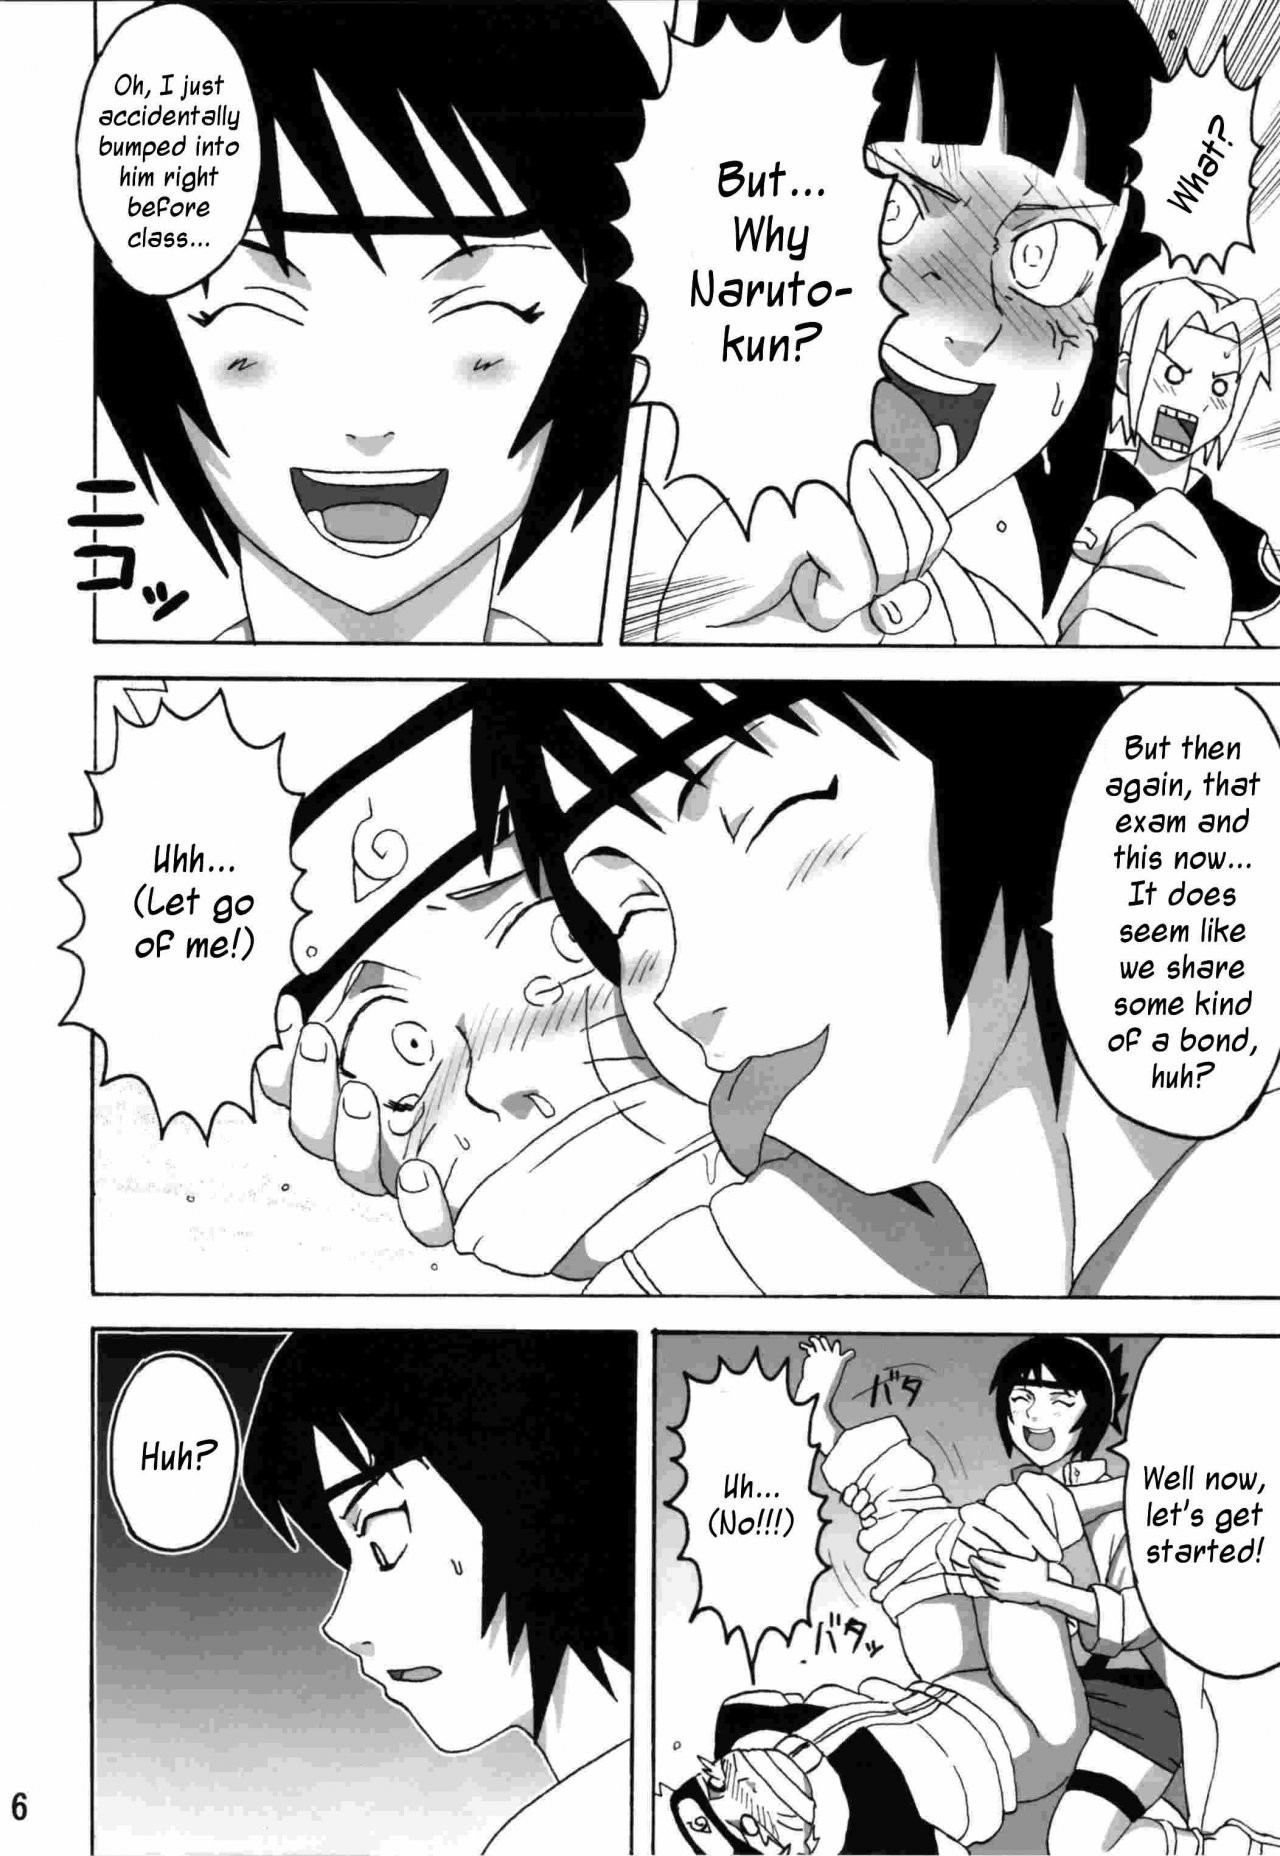 Naruto×tsunade porn comic picture 7